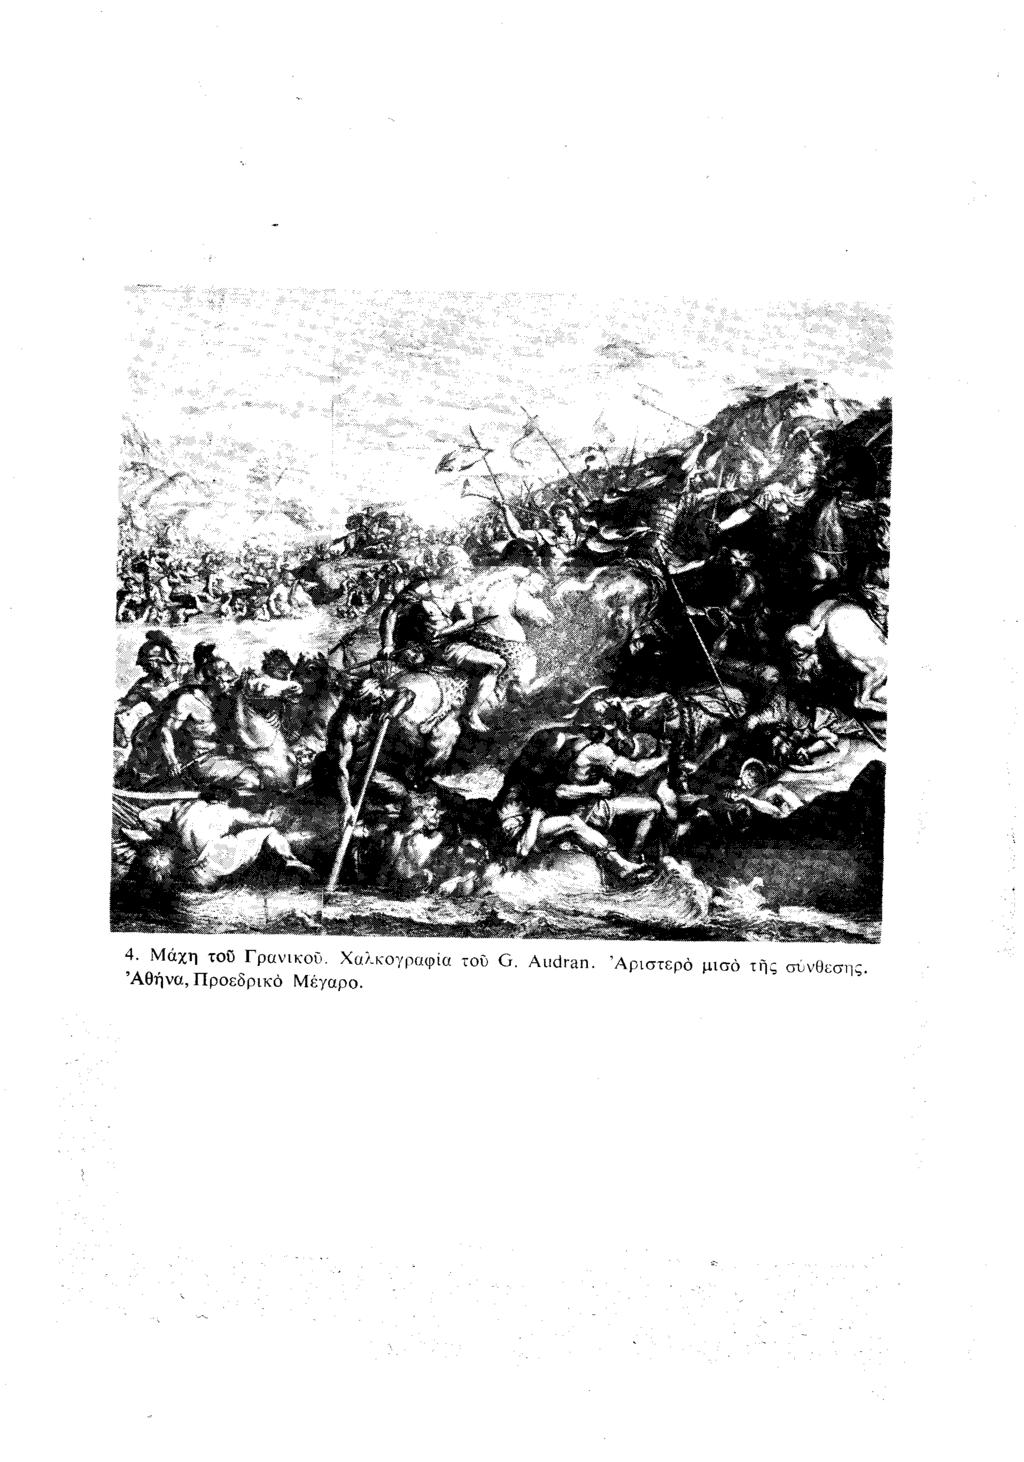 4. Μάχη του Γρανικού. Χαλκογραφία του G. Audran.